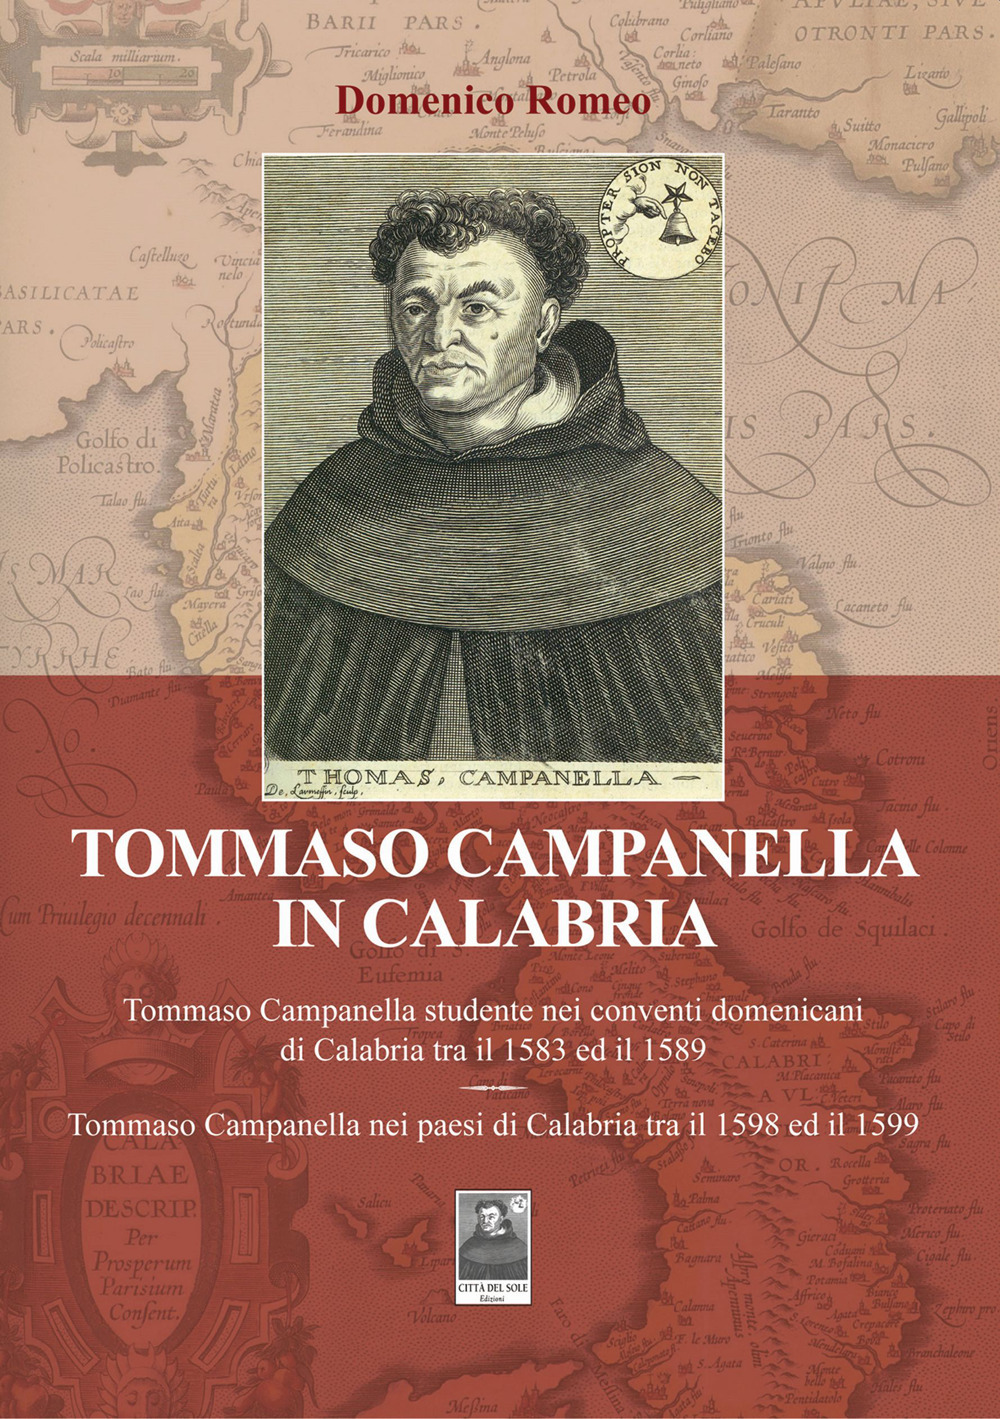 Tommaso Campanella in Calabria. Tommaso Campanella studente nei conventi domenicani di Calabria tra il 1583 ed il 1589. Tommaso Campanella nei paesi di Calabria tra il 1598 ed il 1599